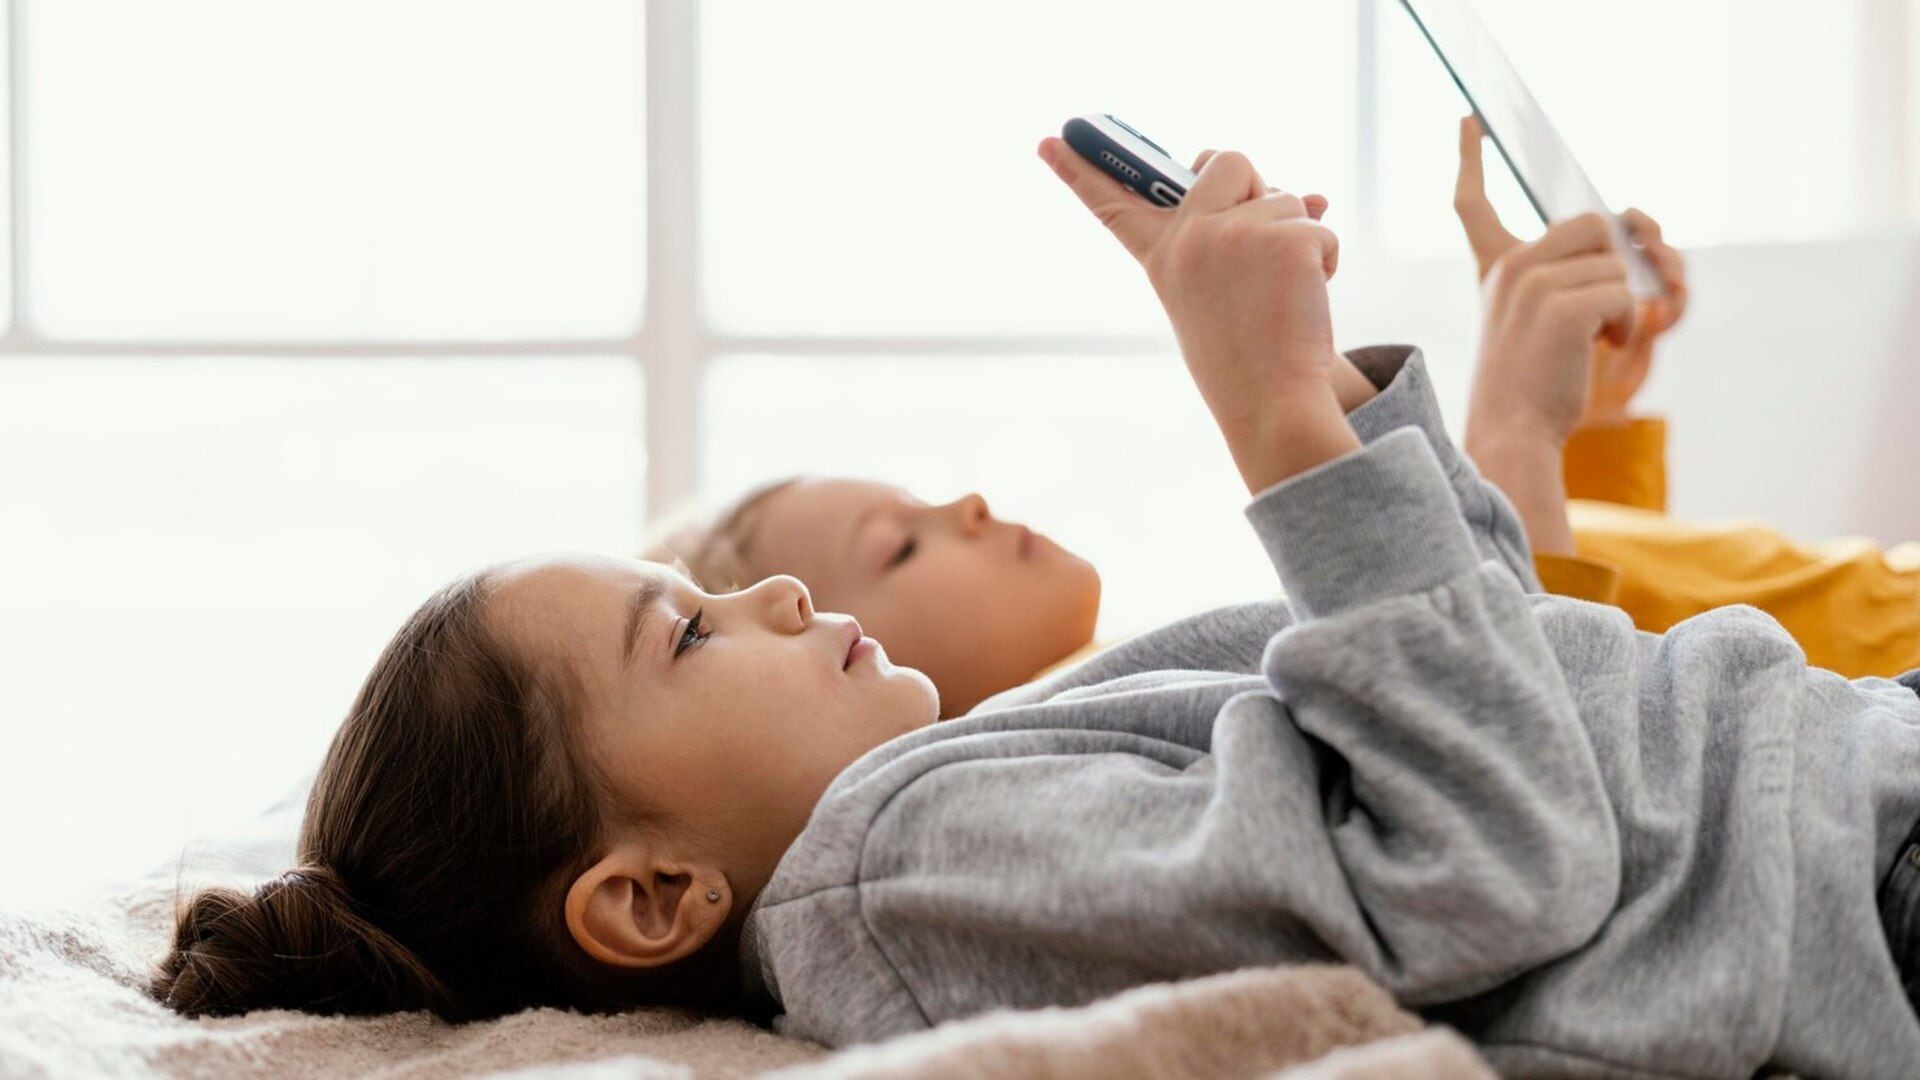 Niño y niña mirando el celular echados en la cama (Freepik)